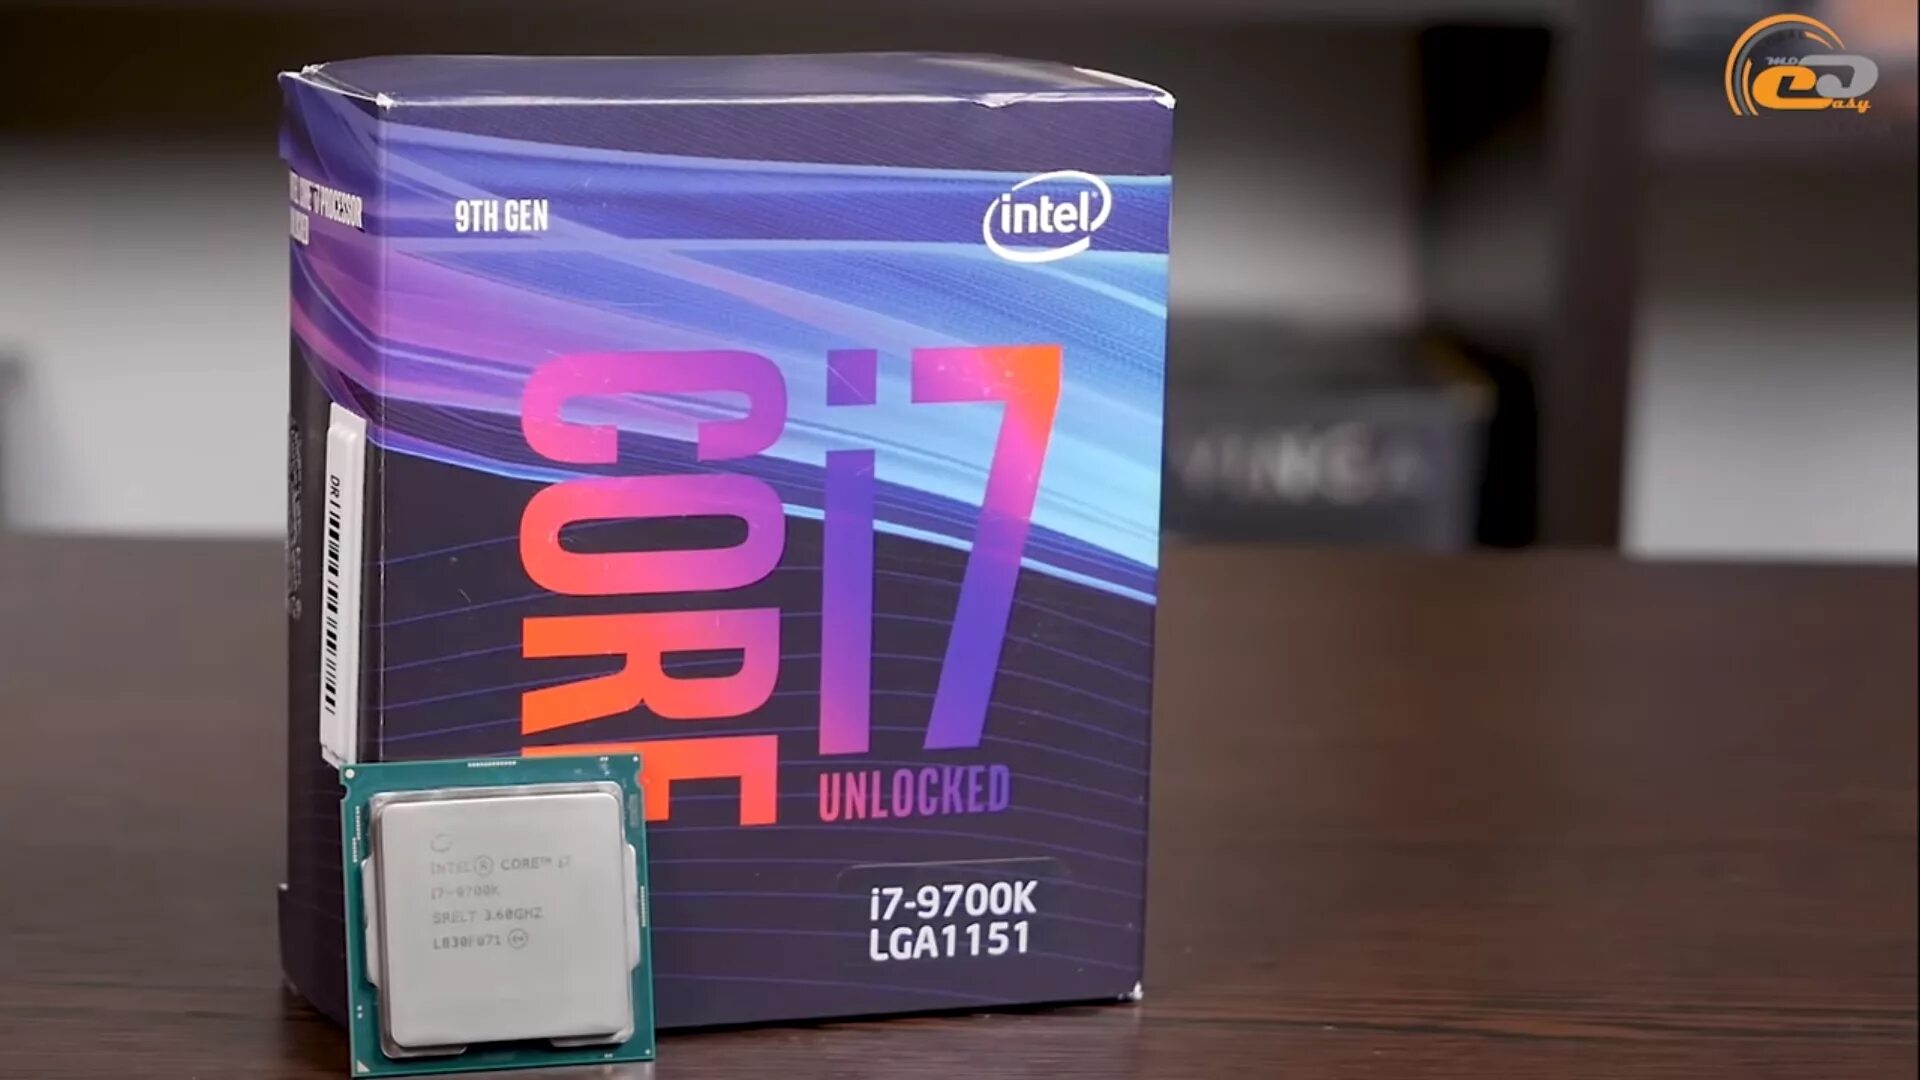 Процессор Intel Core i7-9700k. I7 9700k. Intel i7 9700k. Intel Core 7 9700k. Процессор интел коре i7